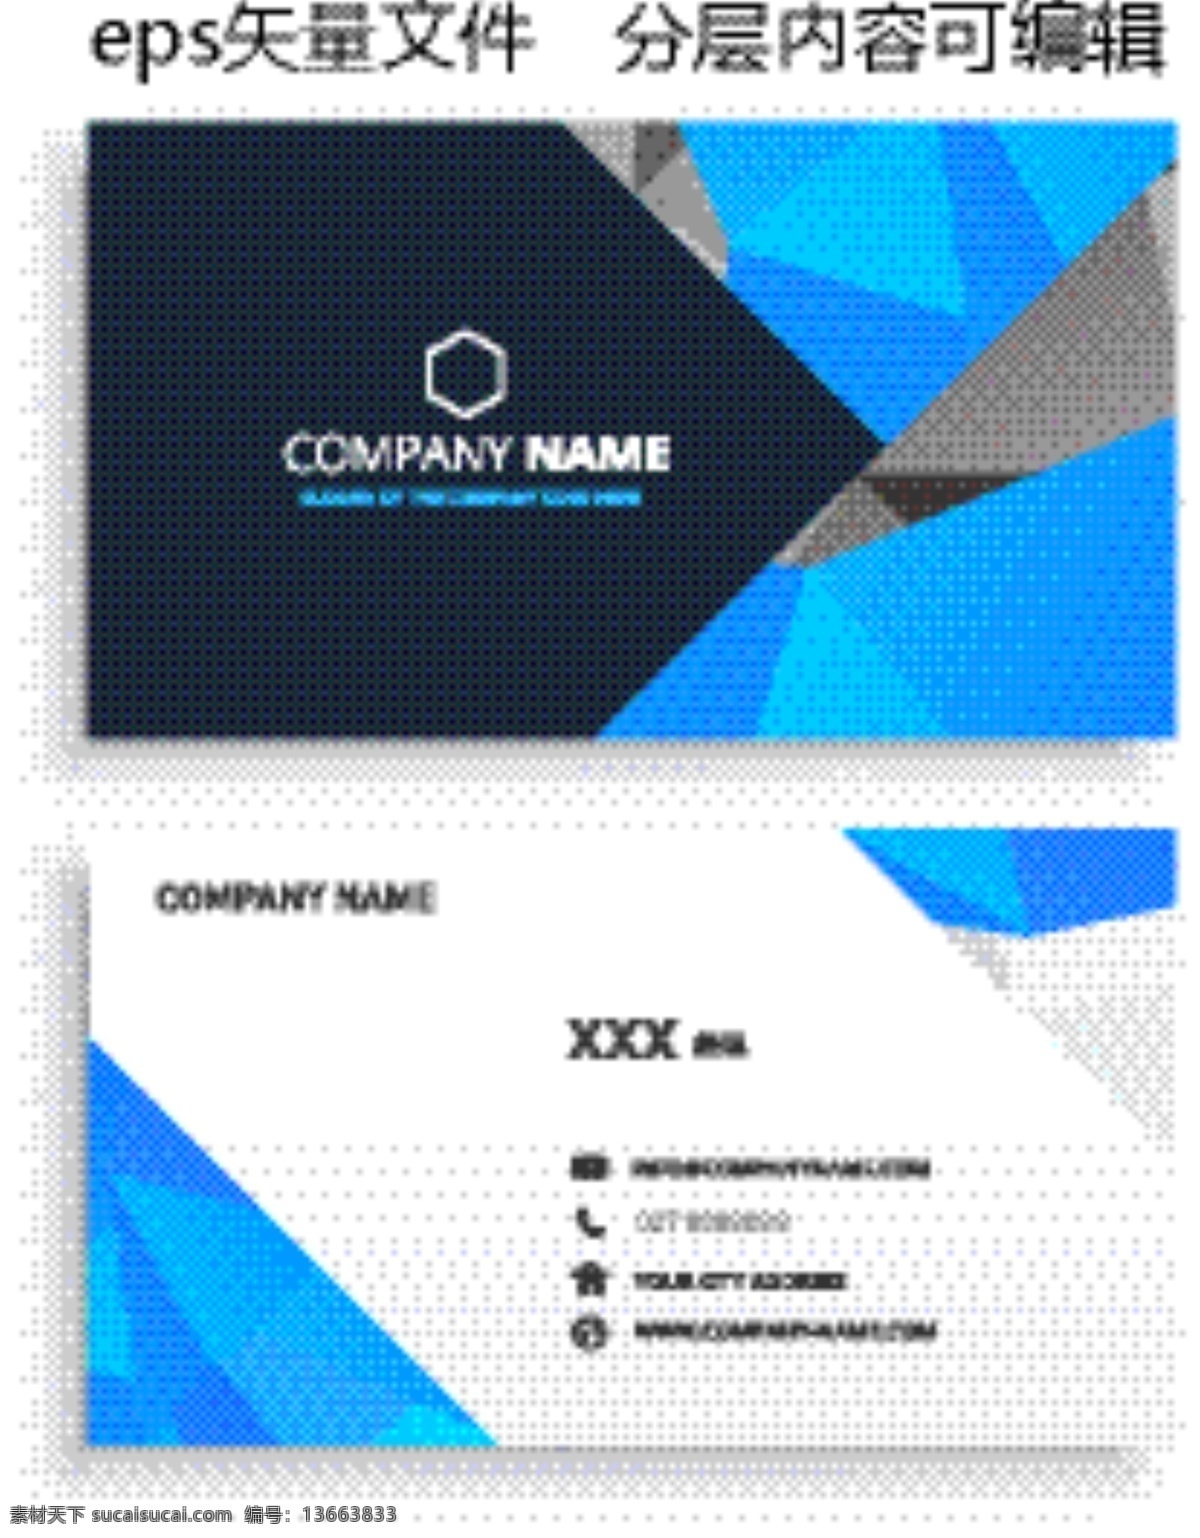 商务名片图片 名片 商务 公司 蓝色 简约 大气 模板 矢量文件 名片卡片